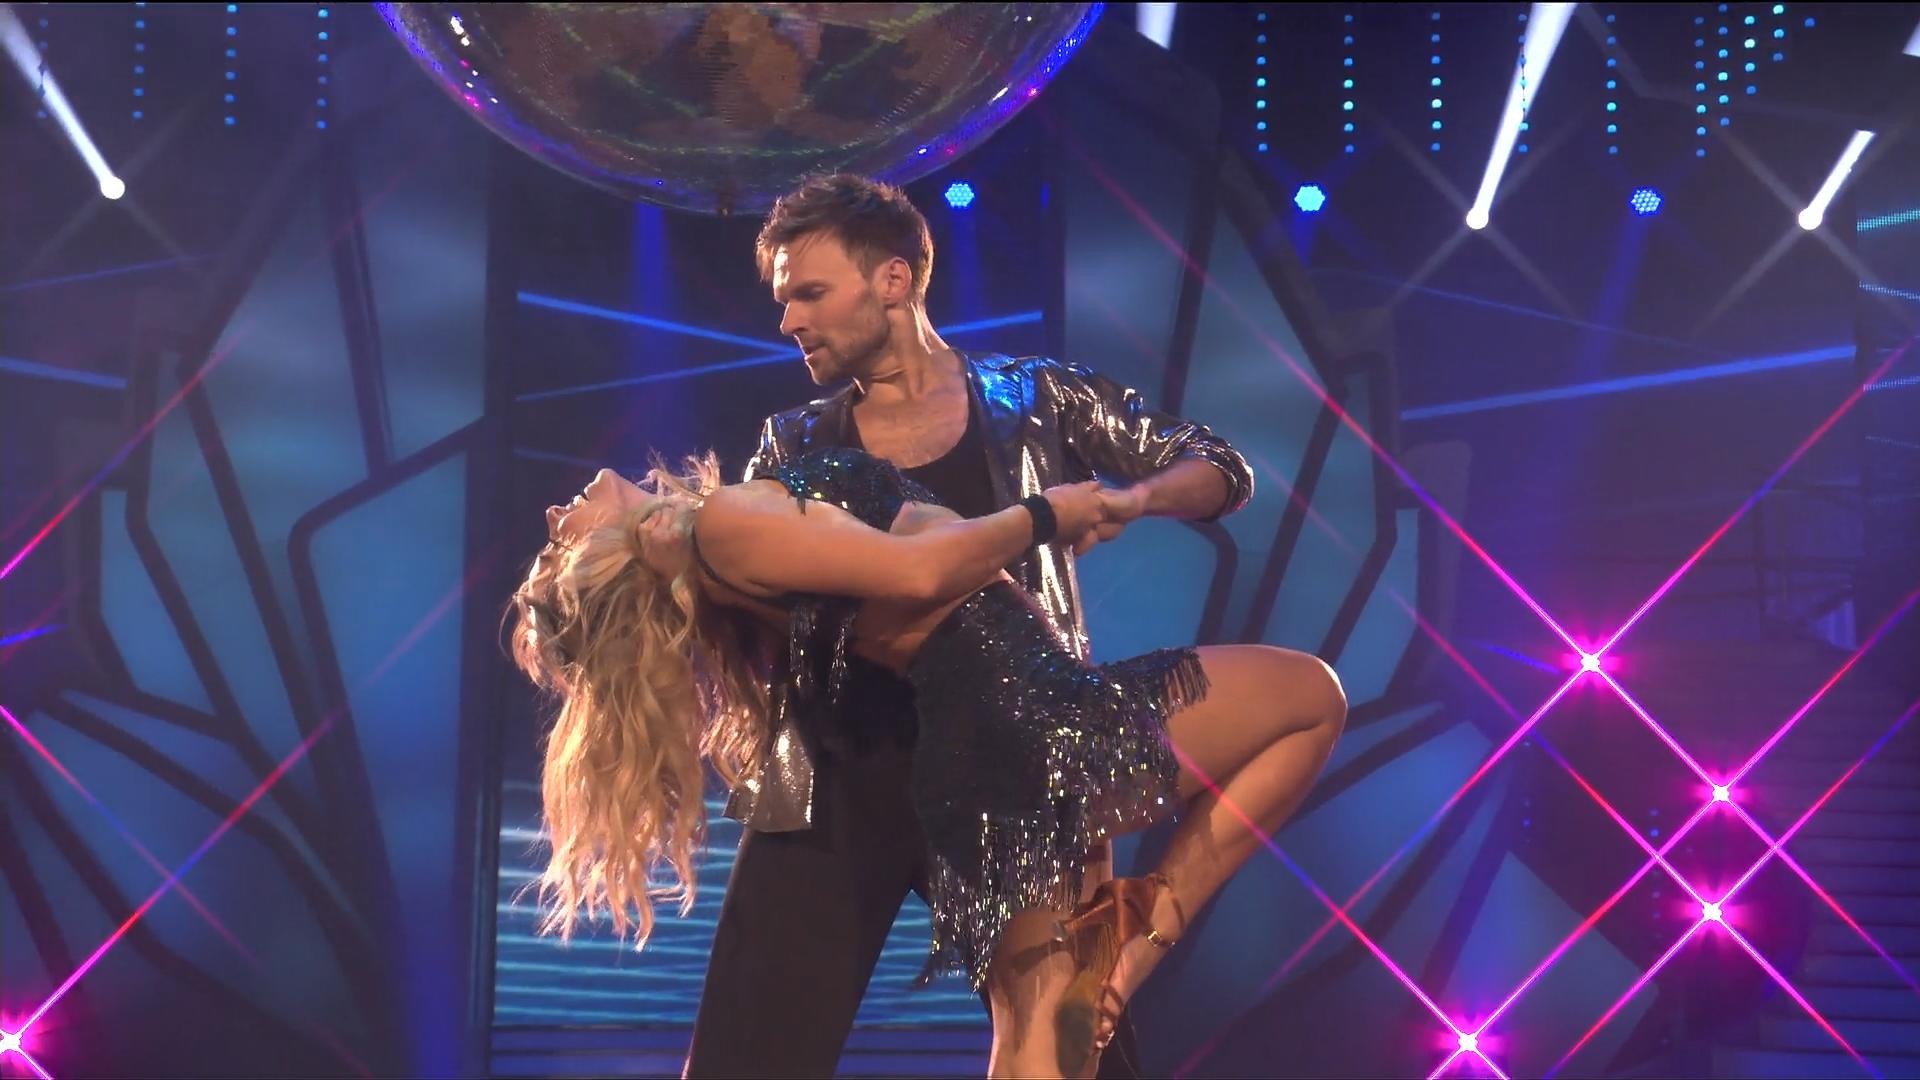 Vadim Garbuzovs Freundin ist eifersüchtig auf Sarah Mangione Bei "Let's Dance" knistert's!